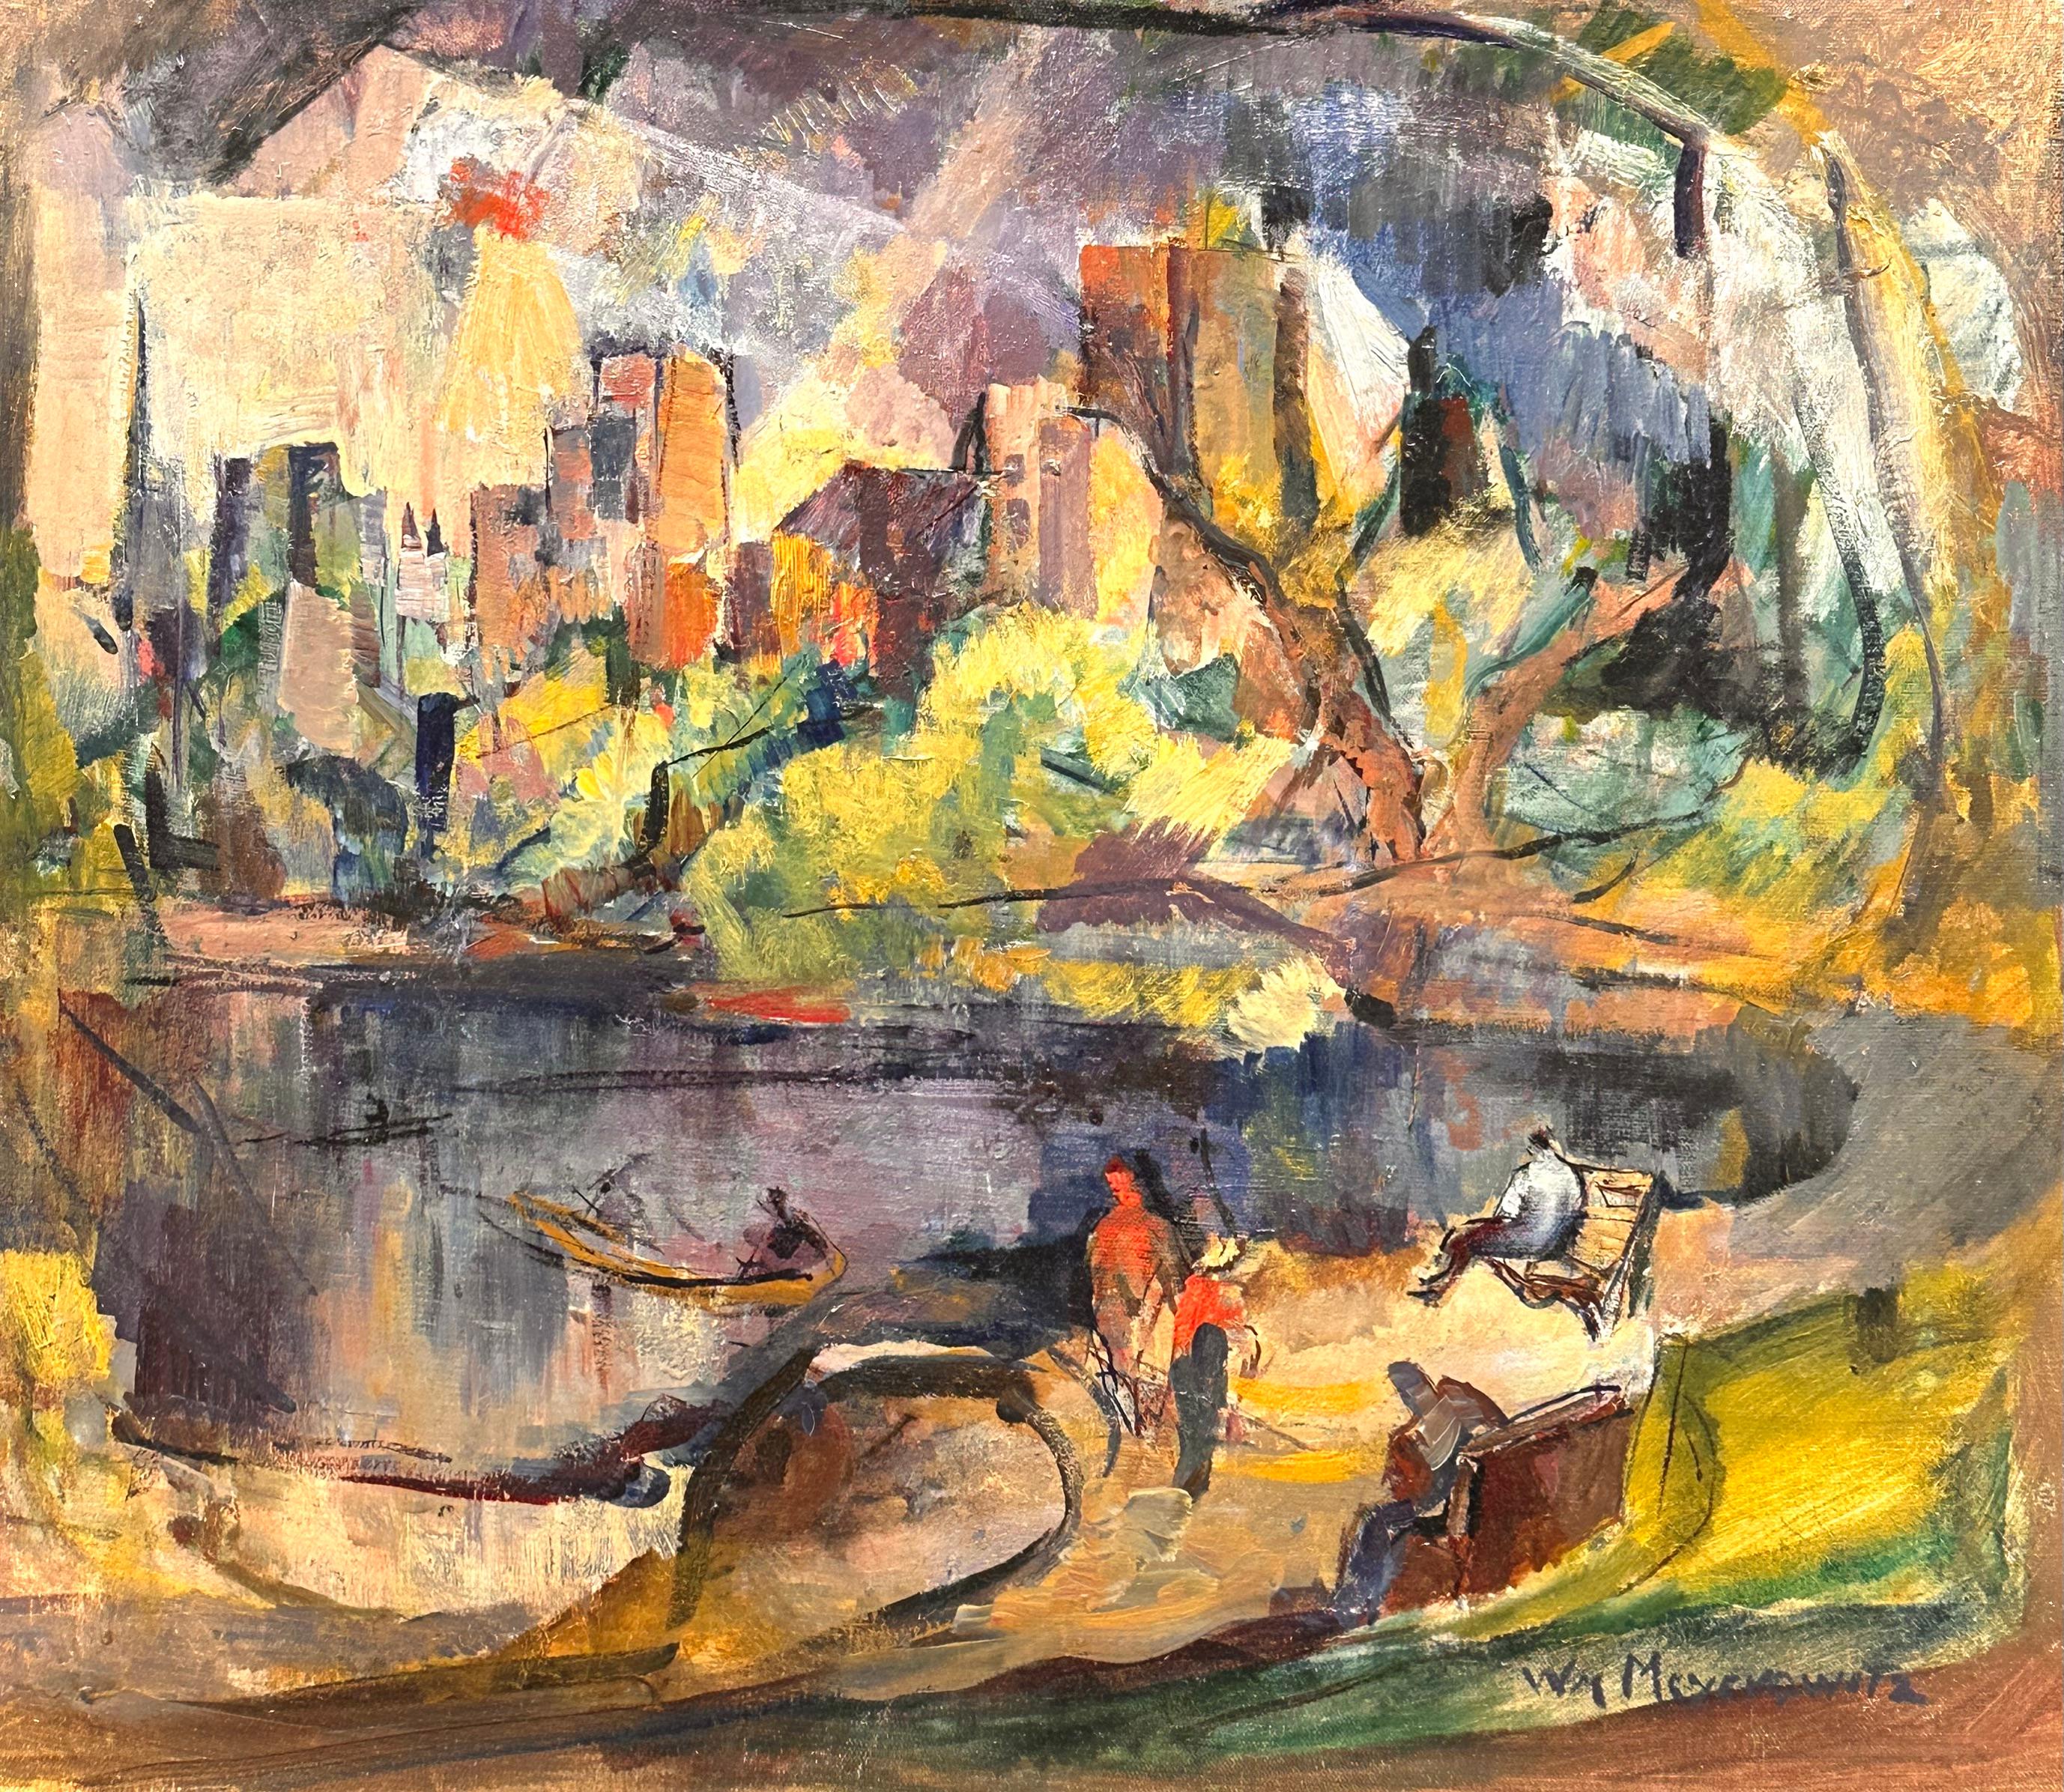 Abstract Painting William Meyerowitz - « Le lac à Central Park, 1947 », paysage de la ville de New York